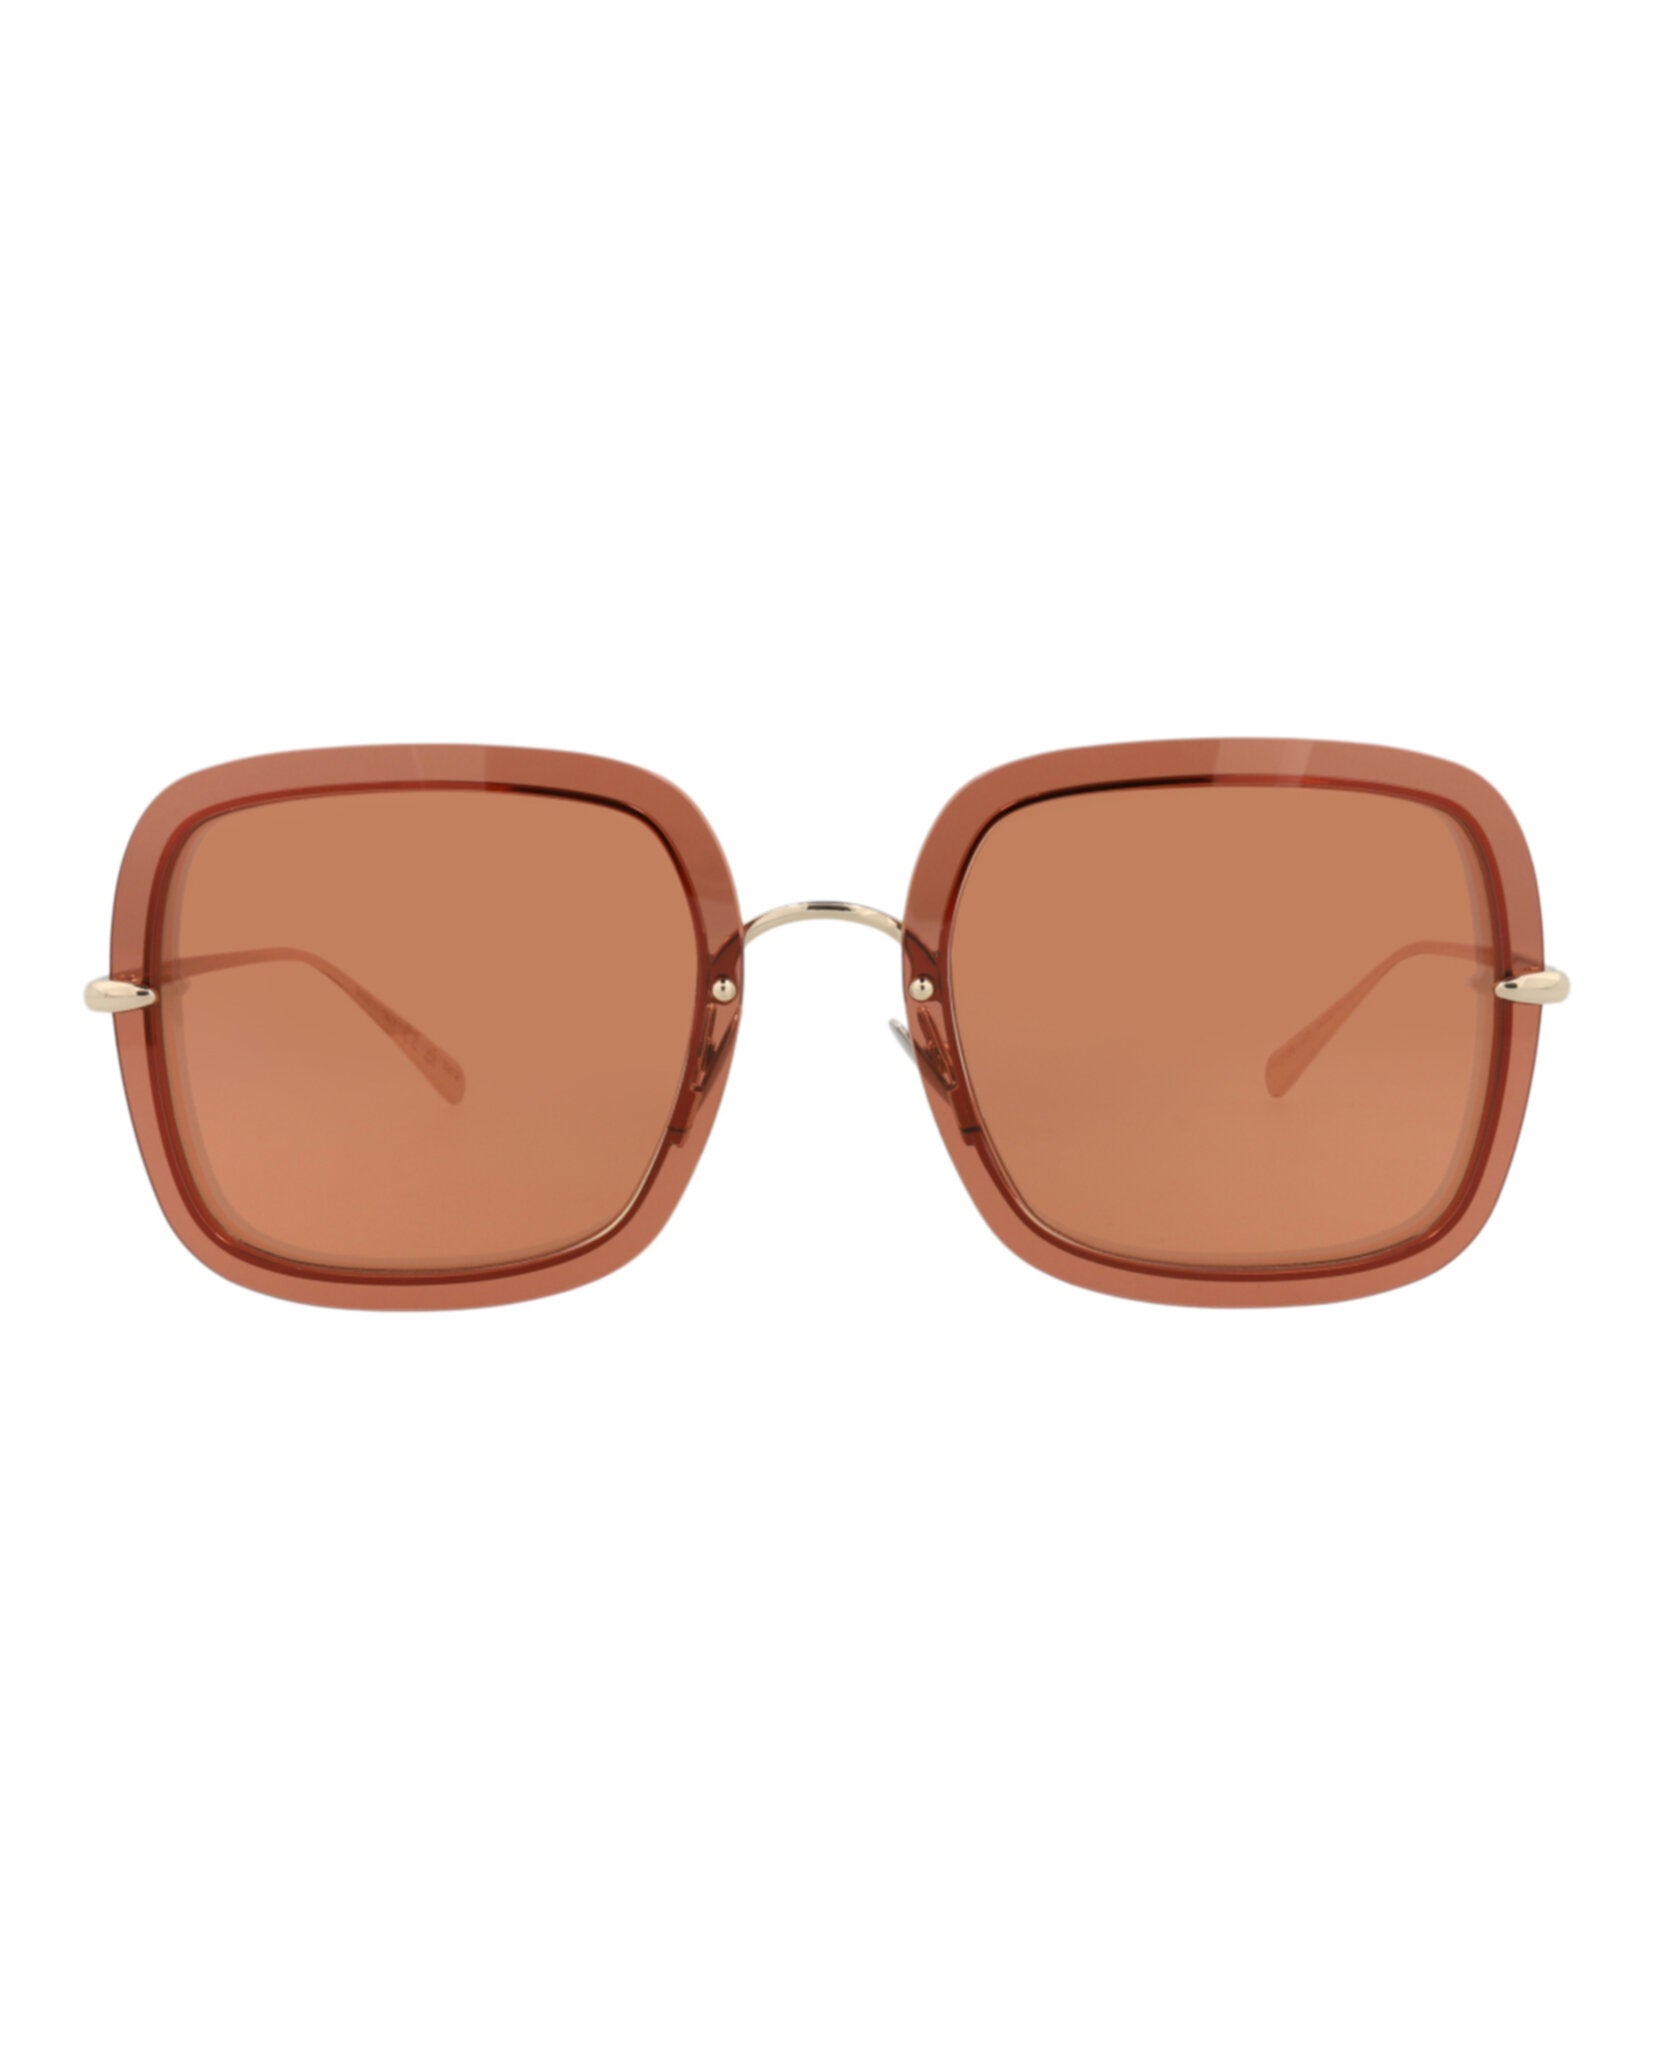 title:Pomellato Square-Frame Metal Sunglasses, style # PM0106S-30012010003;color:Gold Gold Orange